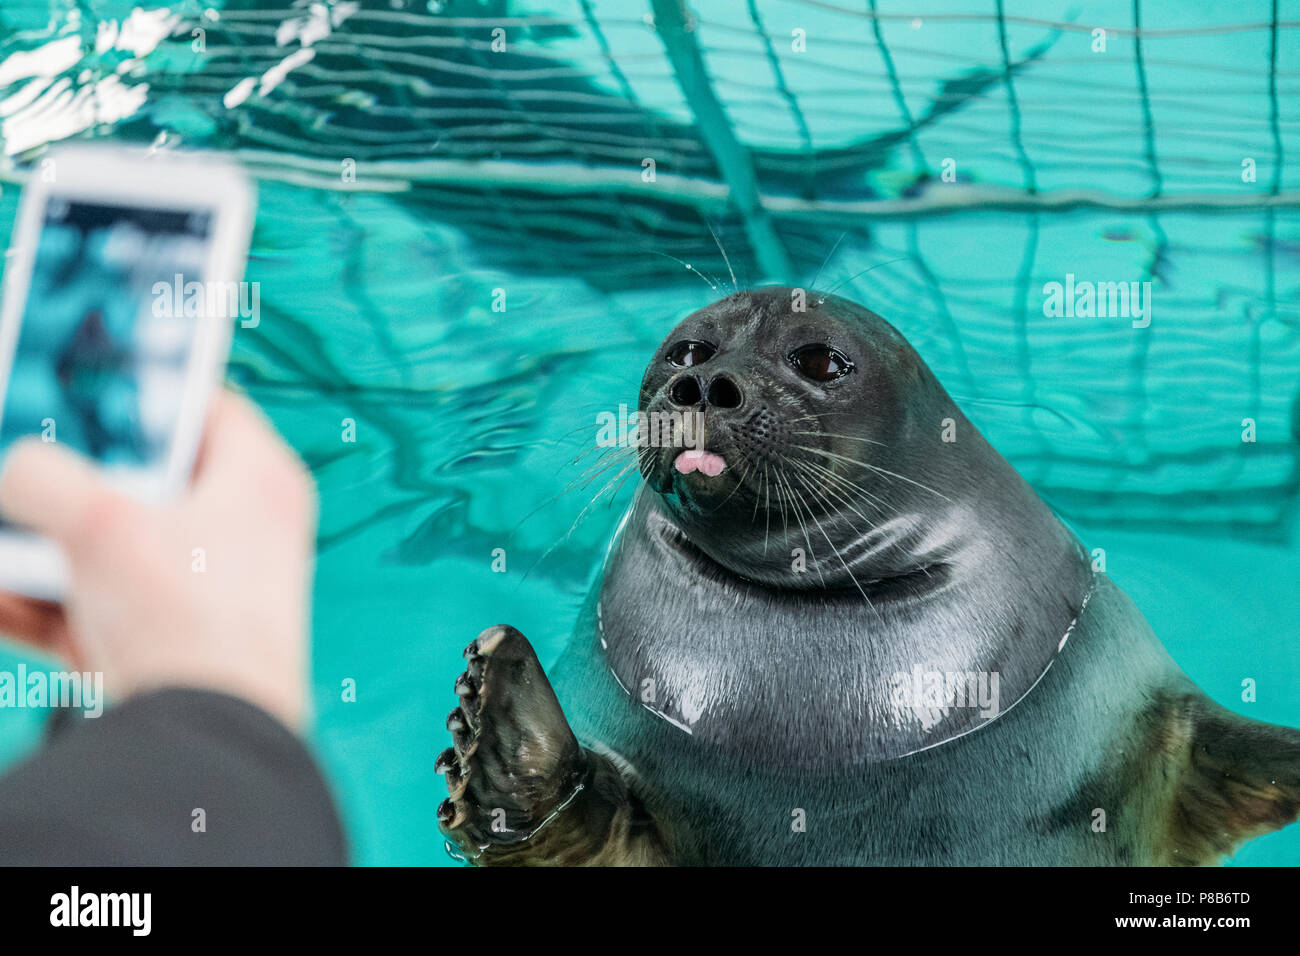 Focus sélectif de la personne avec le smartphone photographiant sea lion dans l'eau, lac Baïkal, listvyanka, Russie Banque D'Images